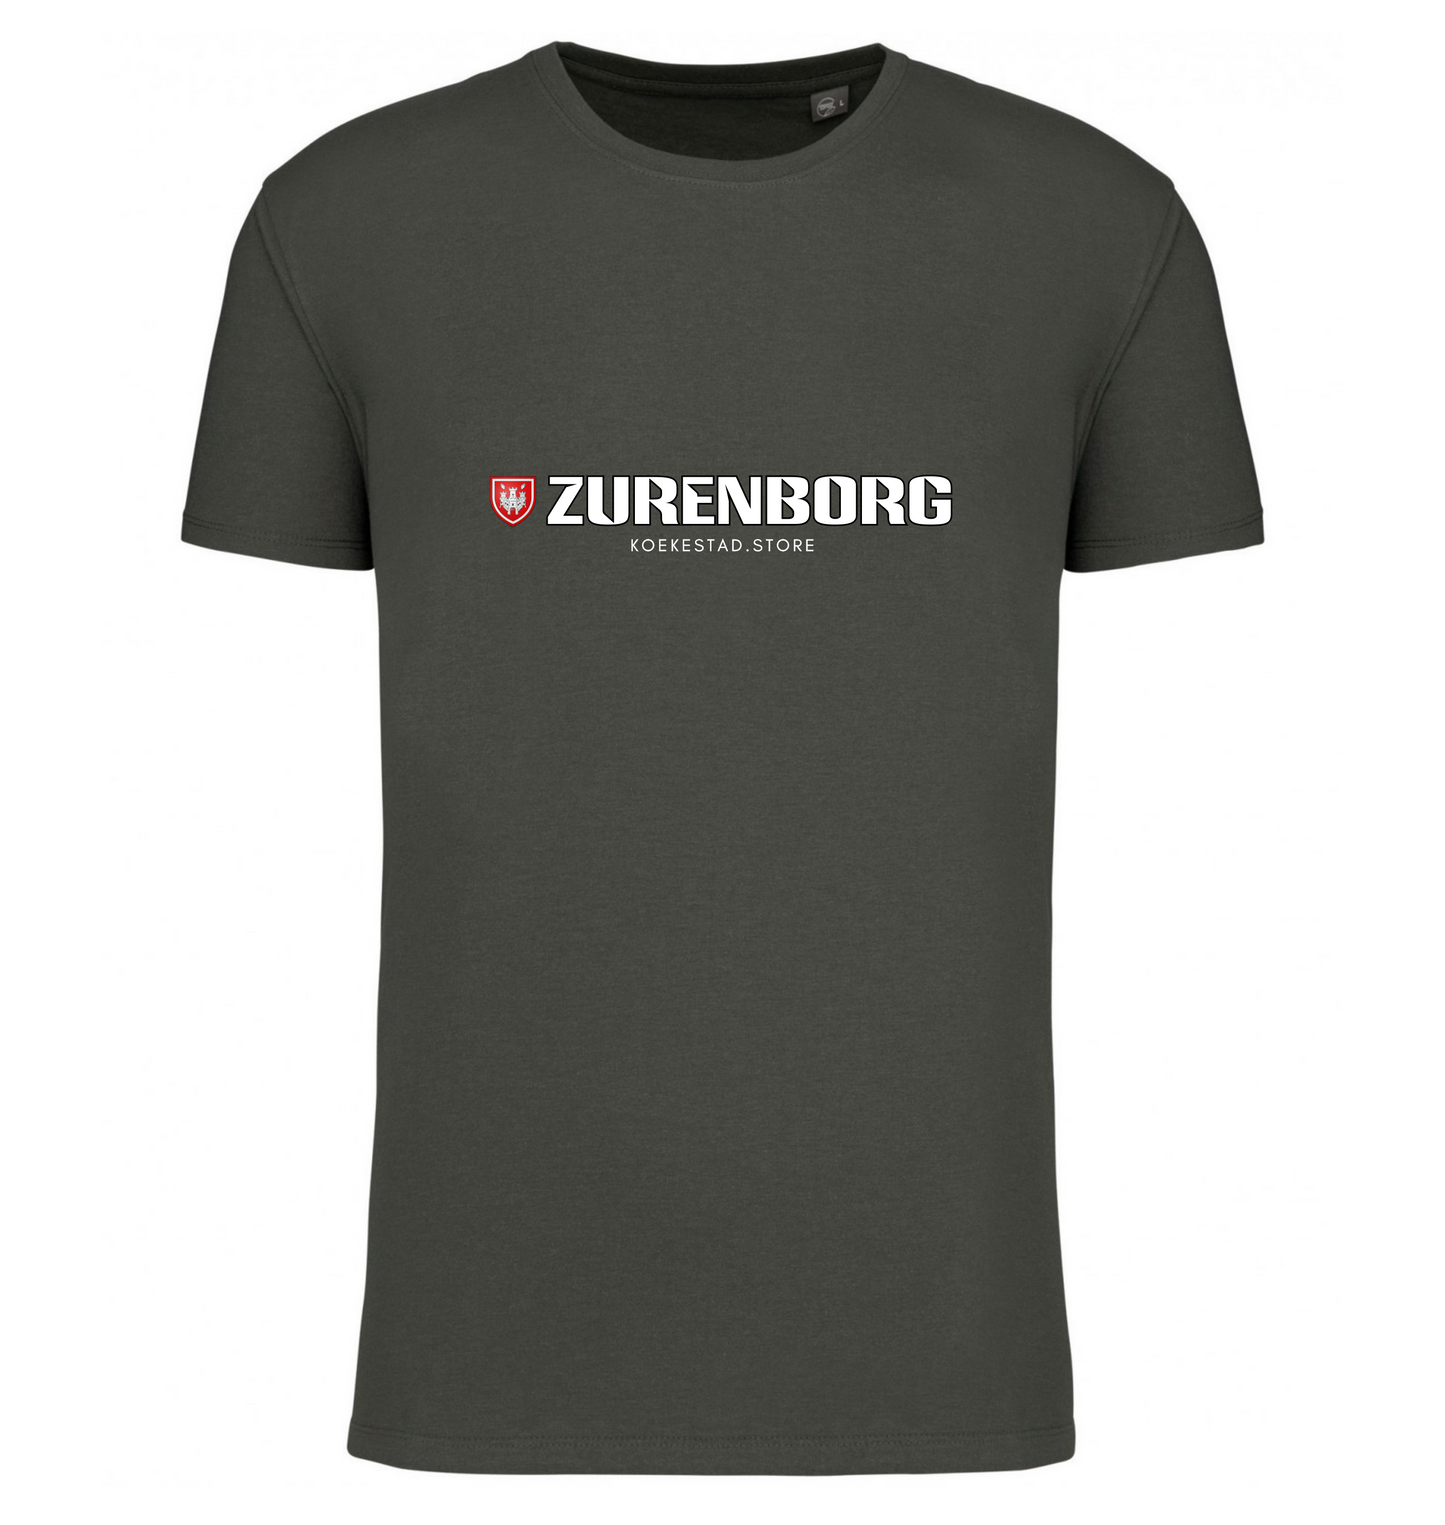 Premium T-Shirt - Zurenborg wijk - 100 % Biokatoen Unisex